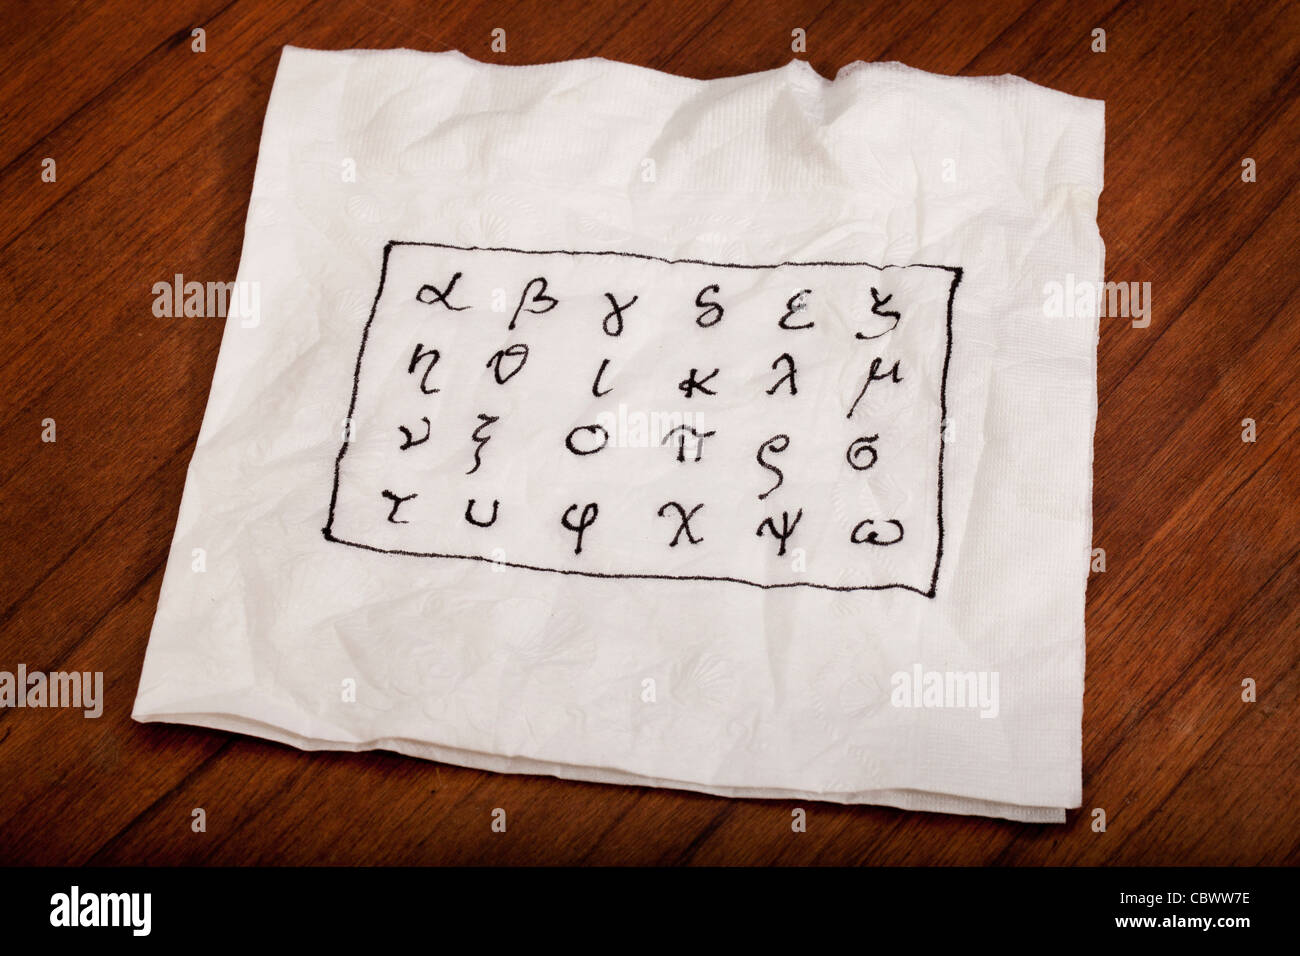 Venti quattro lettere dell'alfabeto greco da alfa e omega (in minuscolo) manoscritta su un tovagliolo bianco Foto Stock